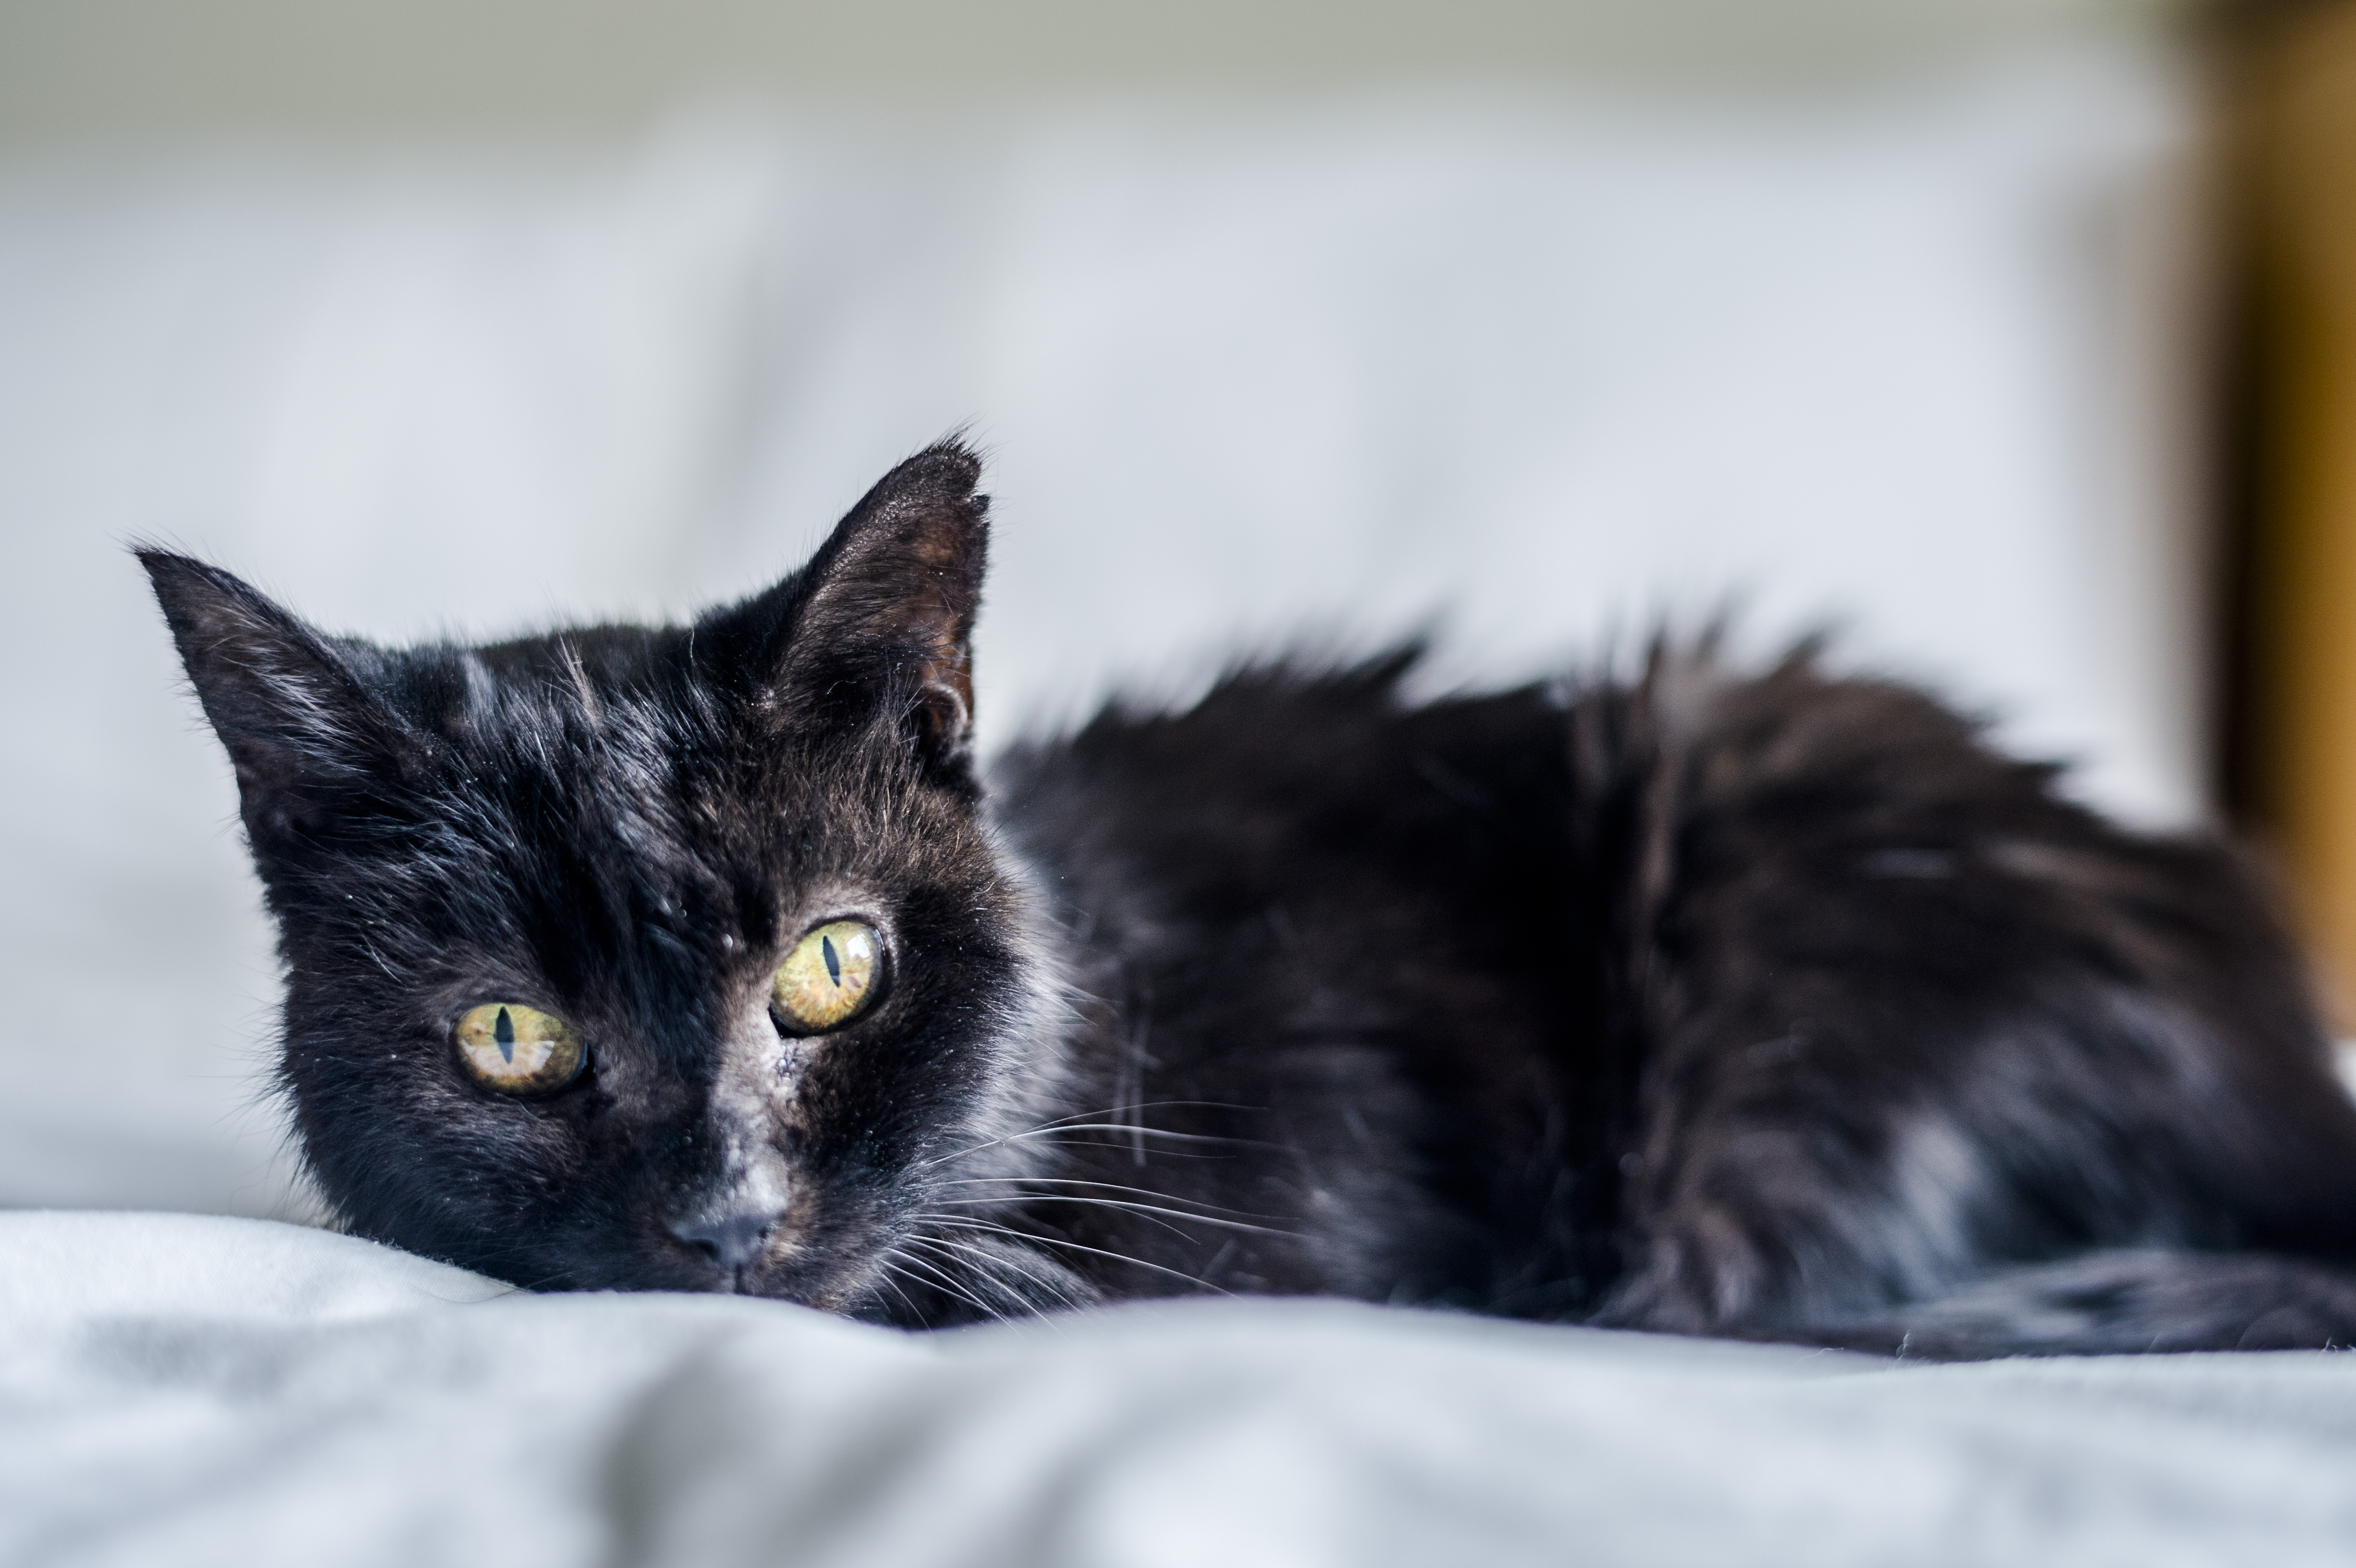 Older cat Charcoal enjoys snuggling up on her comfy bed